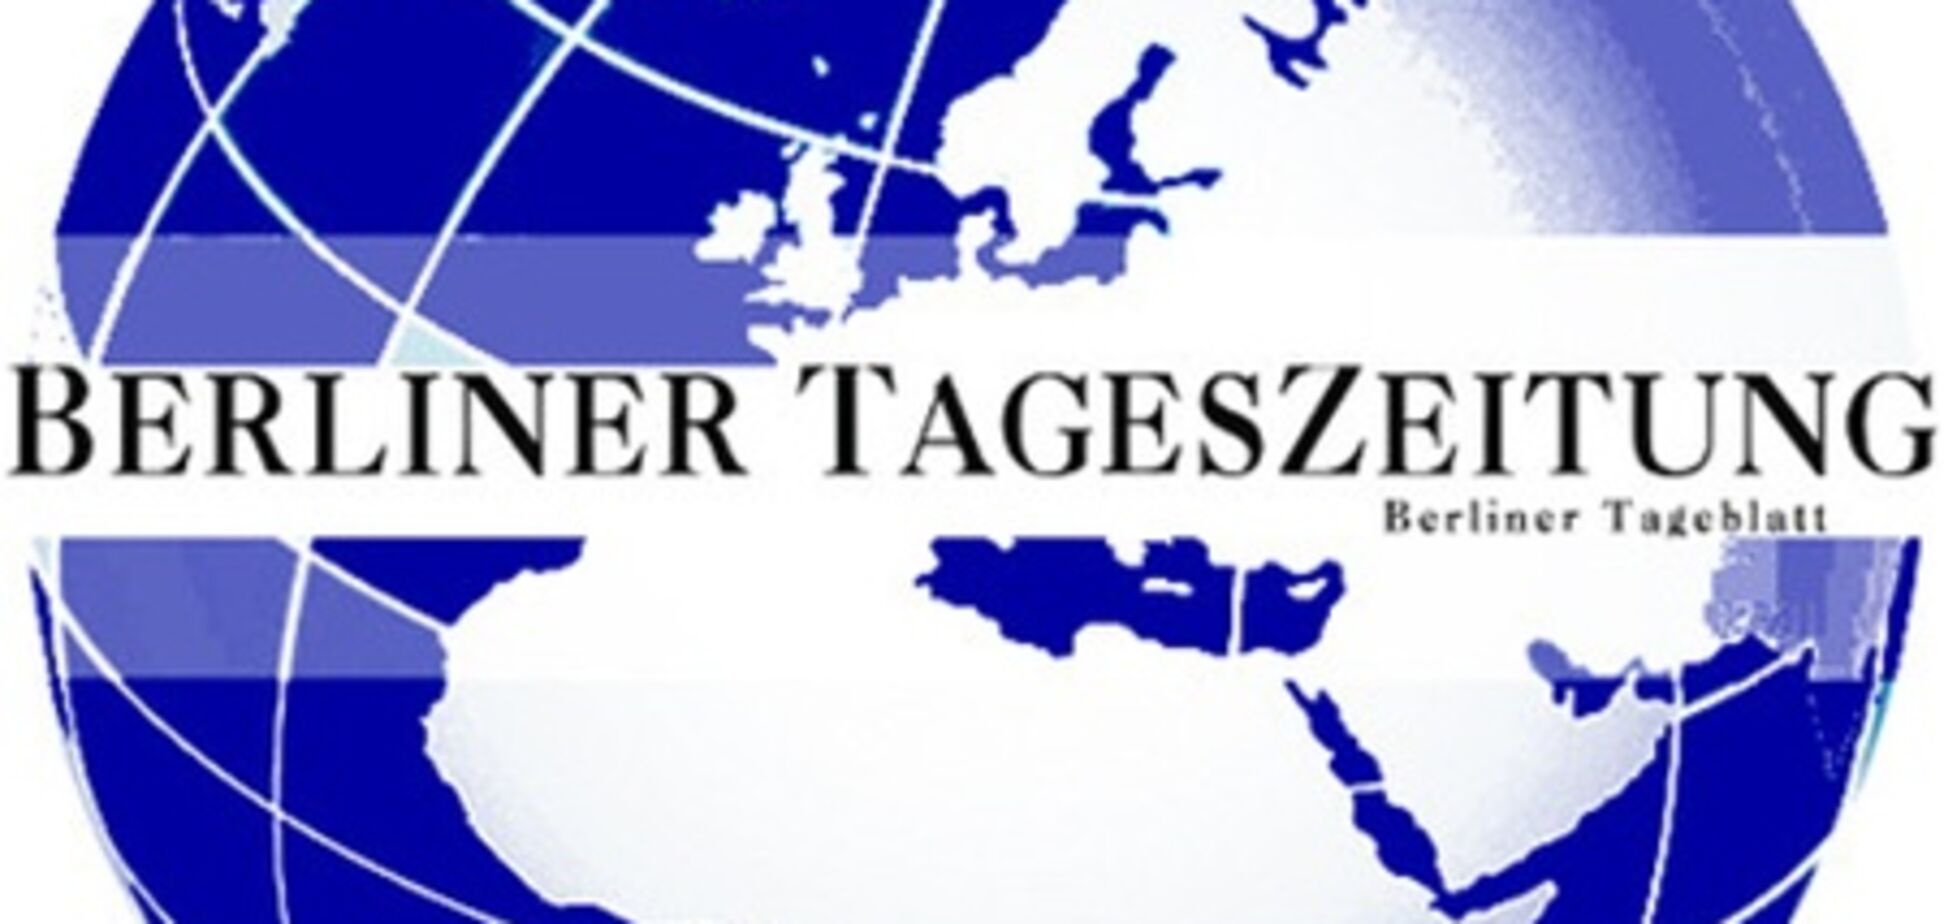 Німецьке ЗМІ, що критикує Тимошенко, звинуватило 'Deutsche Welle' в заангажованості